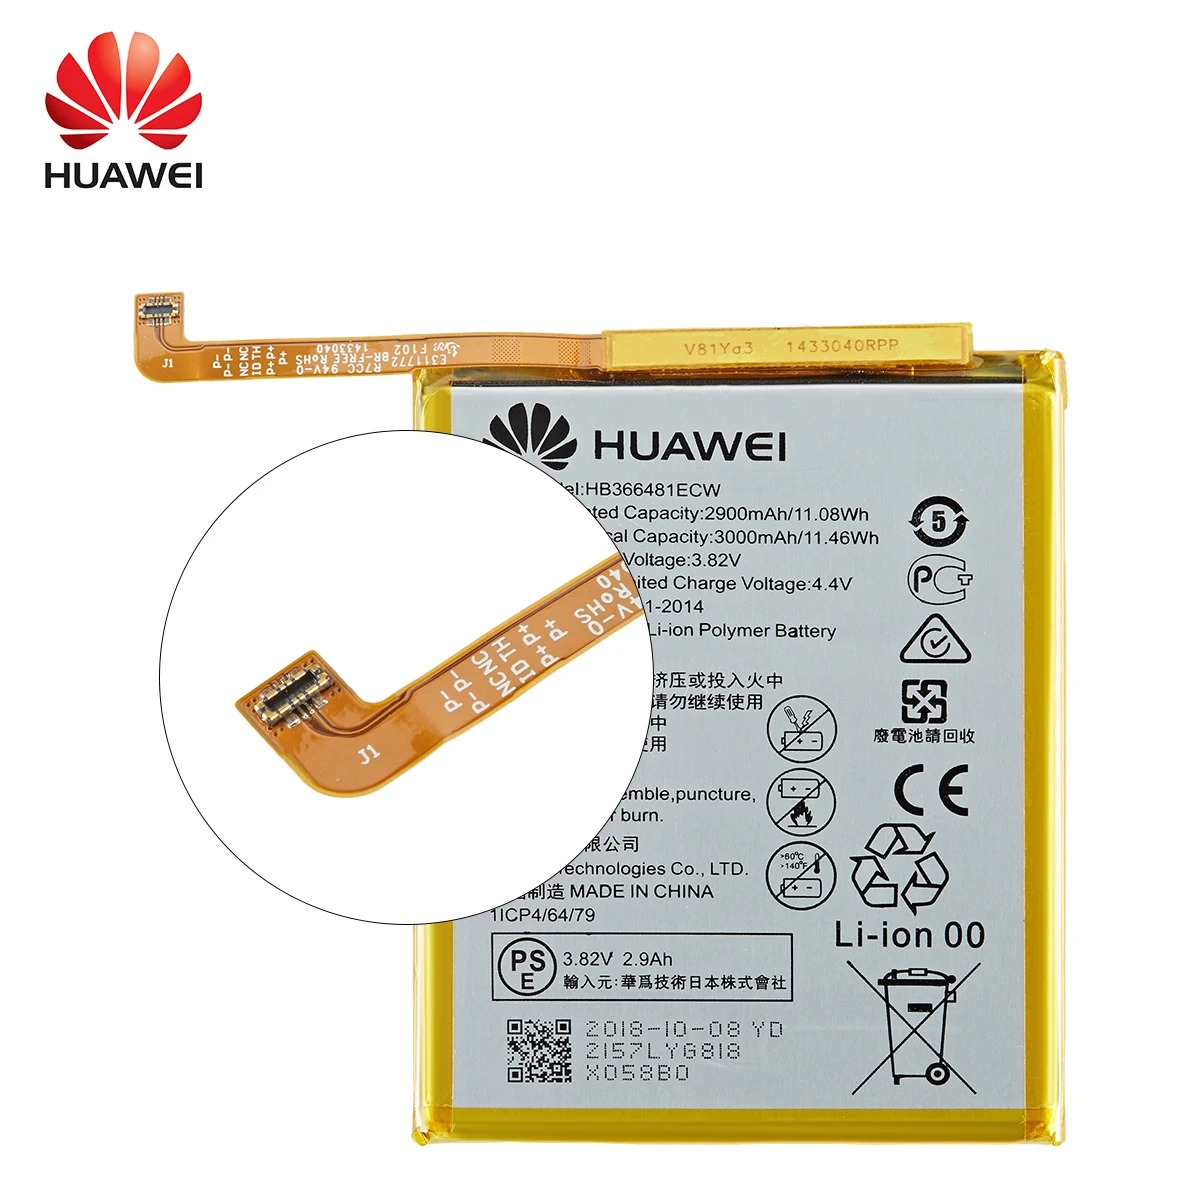 Pôvodnej HB366481ECW Telefón, Batériu Pre Huawei p9 /p9 lite česť 8 p10 lite y6 II p8 lite 2017 p20 lite Ascend P9 +Nástroje